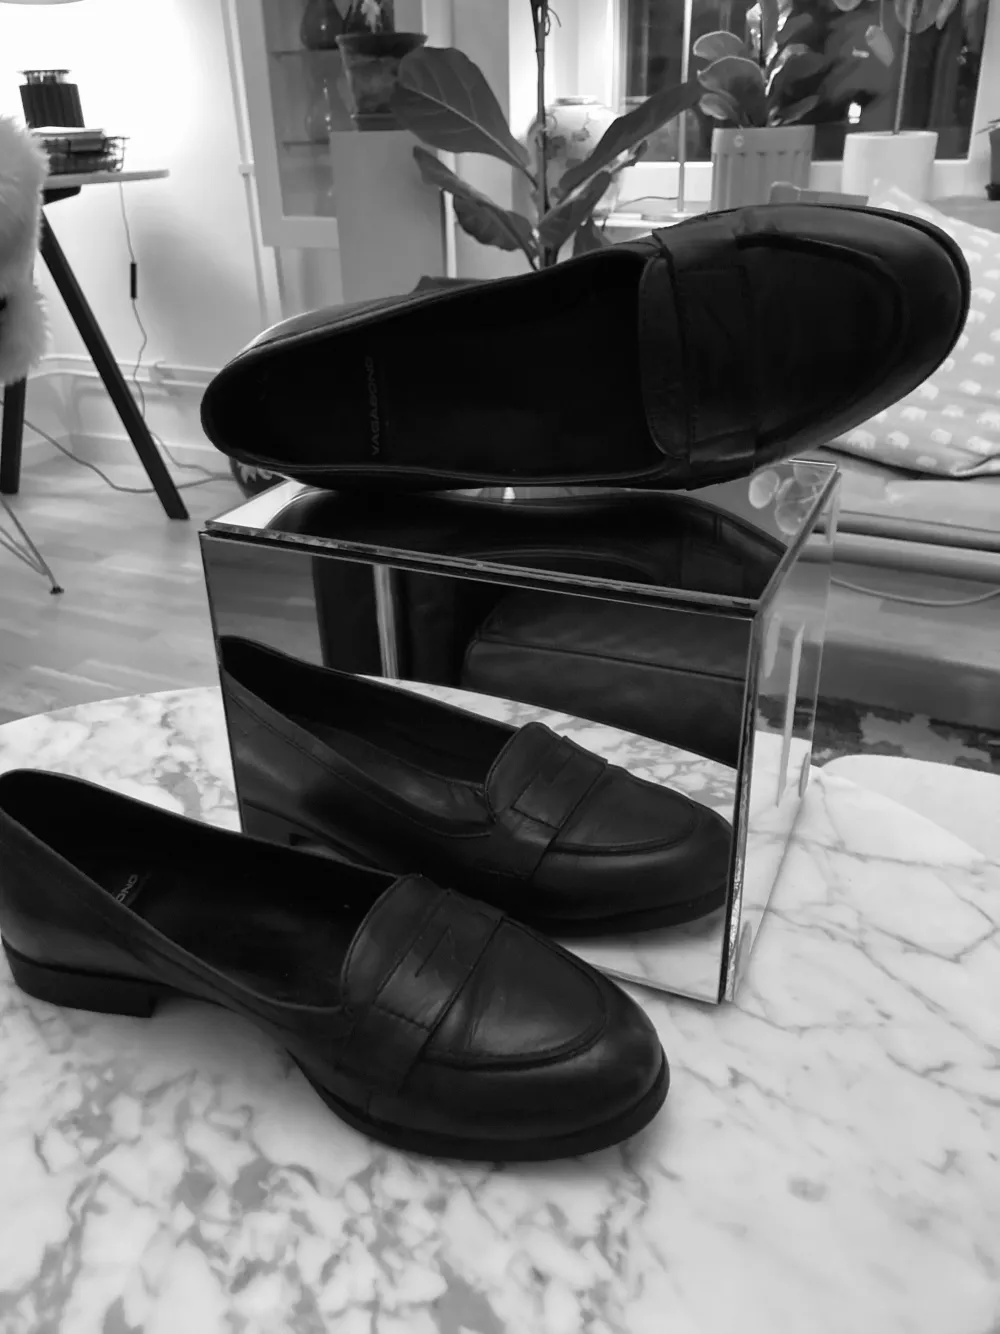 Fina skor i svart läder från Vagabond, kanppt använda.. Skor.